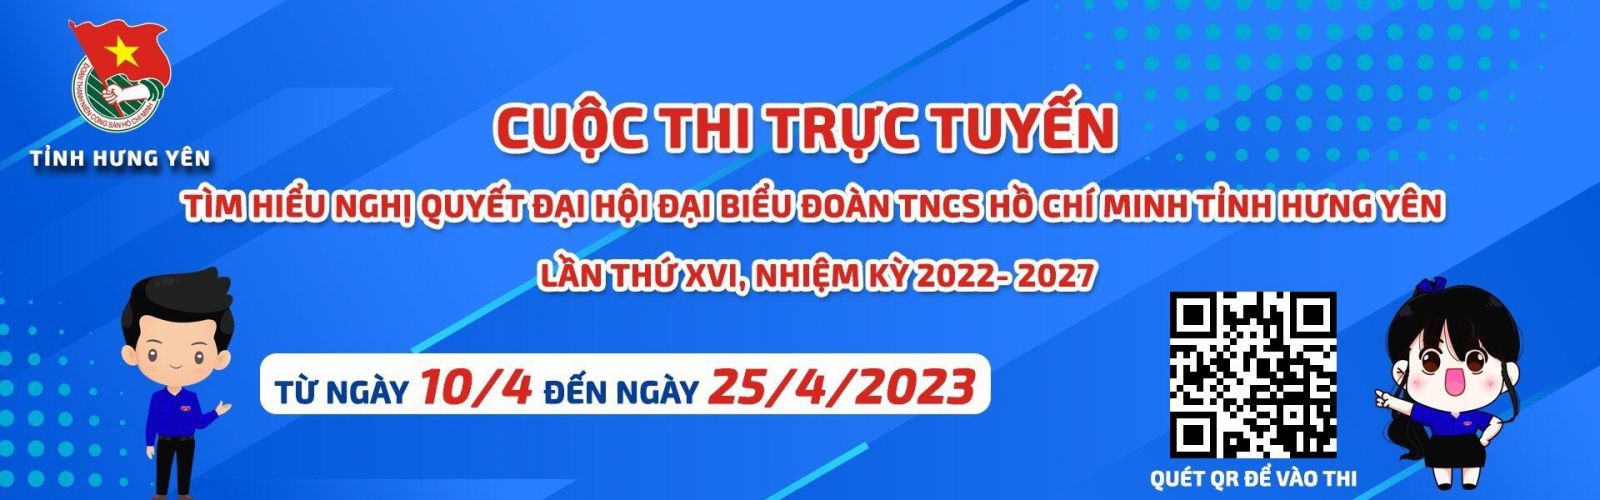 Tỉnh đoàn phát động Cuộc thi trực tuyến tìm hiểu Nghị quyết Đại hội đại biểu Đoàn TNCS Hồ Chí Minh tỉnh Hưng Yên lần thứ XVI, nhiệm kỳ 2022- 2027